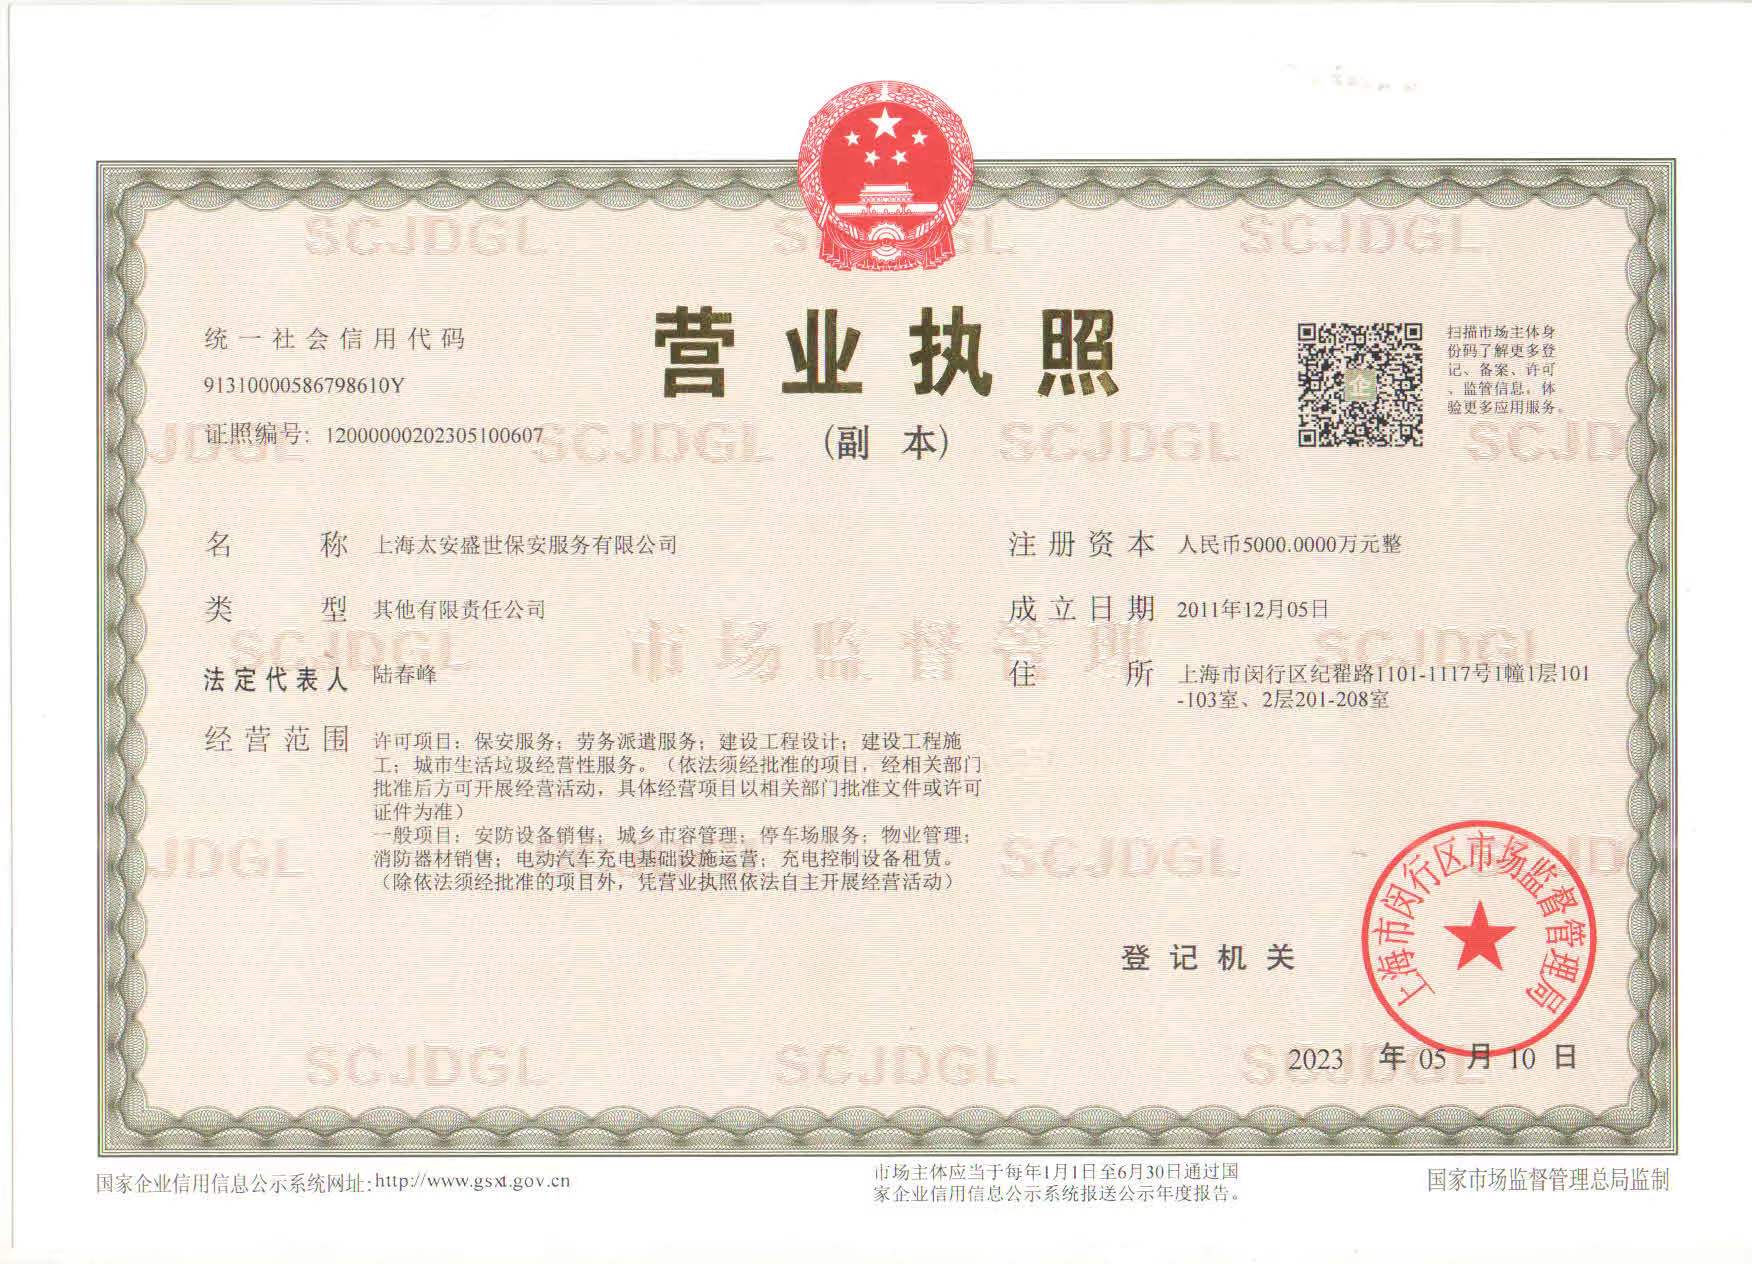 上海太安盛世保安三证合一营业执照